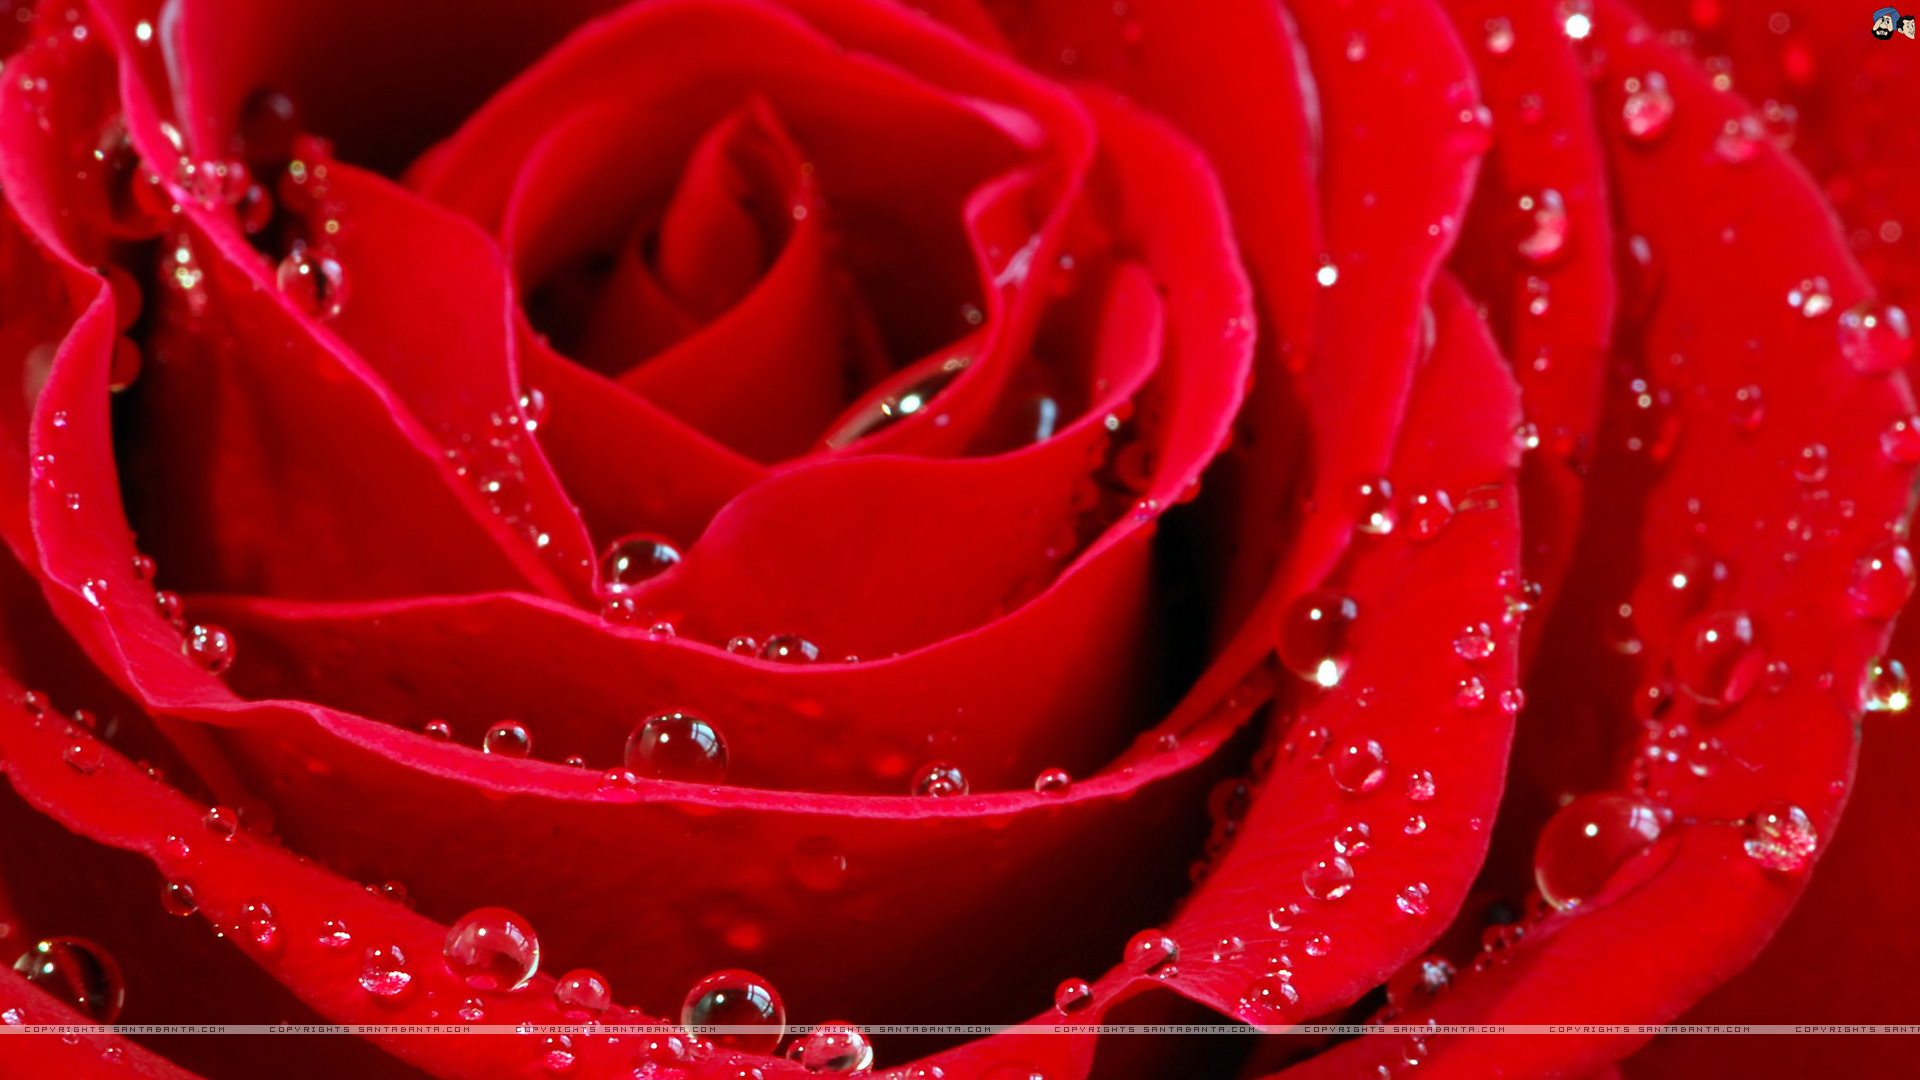 [49+] Free Wallpaper Roses 3D Background | WallpaperSafari.com